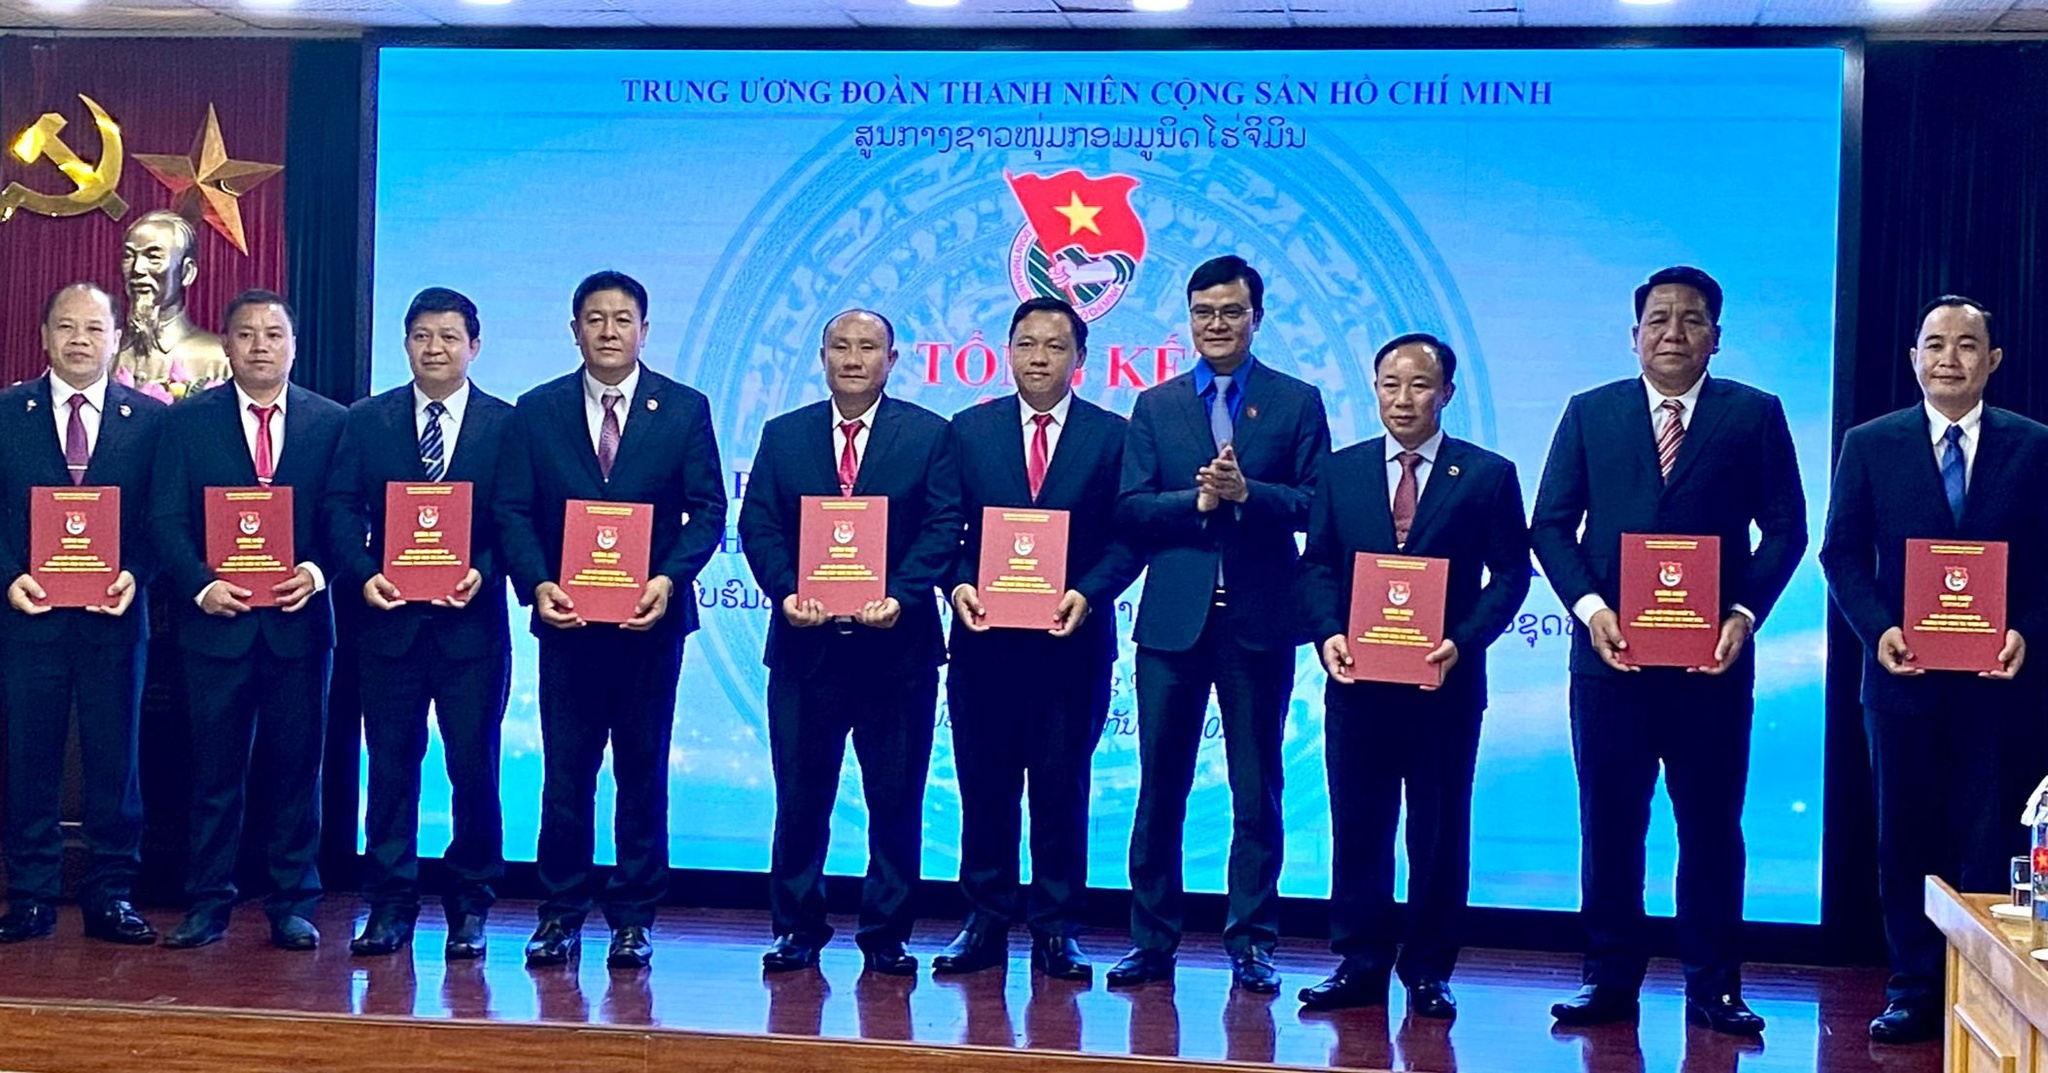 Tăng cường hợp tác giữa tổ chức Đoàn các tỉnh giáp biên Lào - Việt Nam - ảnh 3